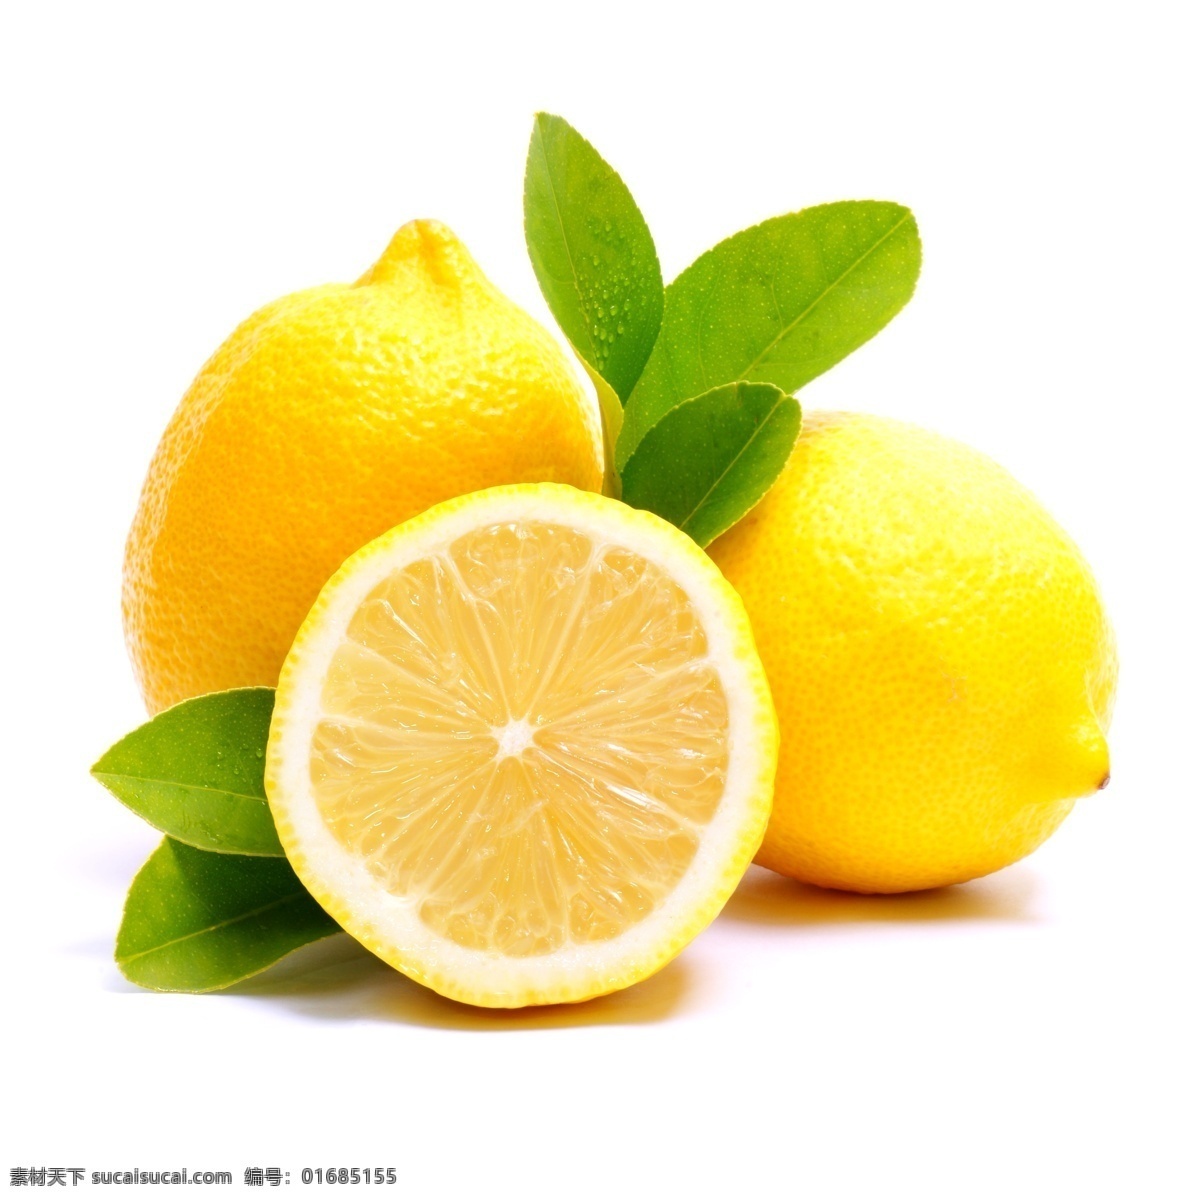 新鲜 柠檬 新鲜水果 果实 果肉 切开的柠檬 蔬菜图片 餐饮美食